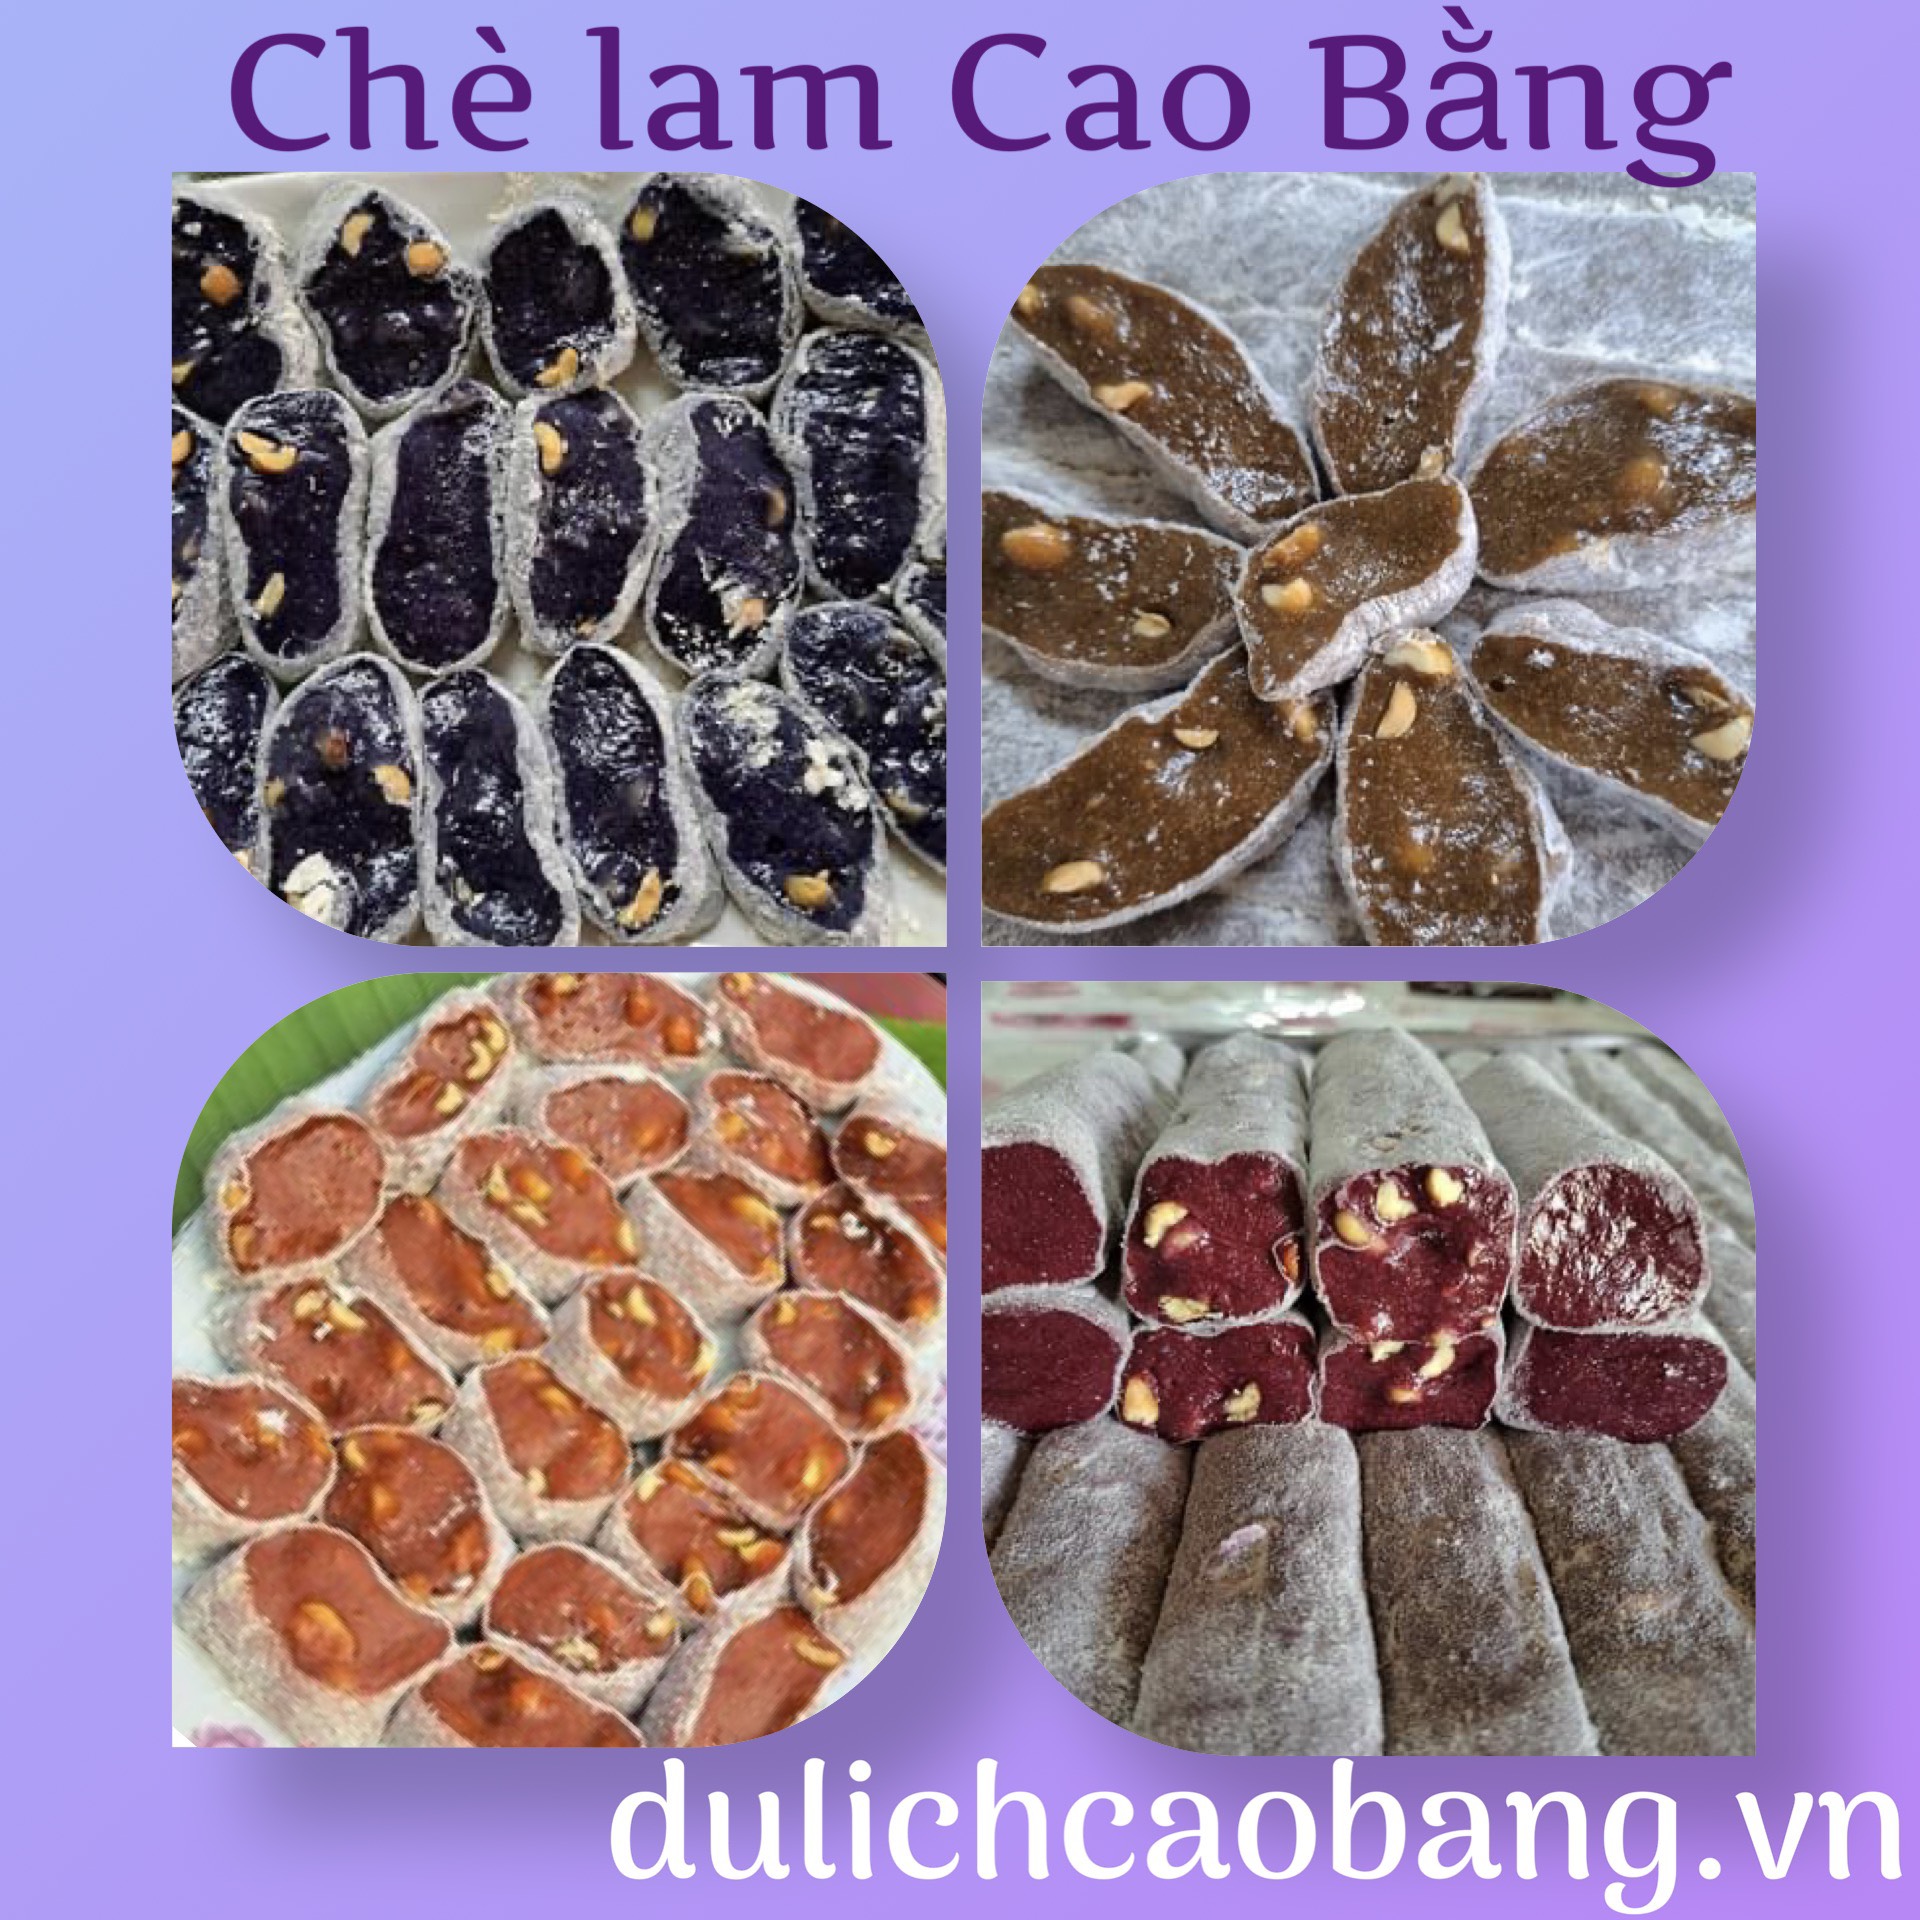 Bánh chè lam Cao Bằng - đặc sản quà tặng Việt Nam